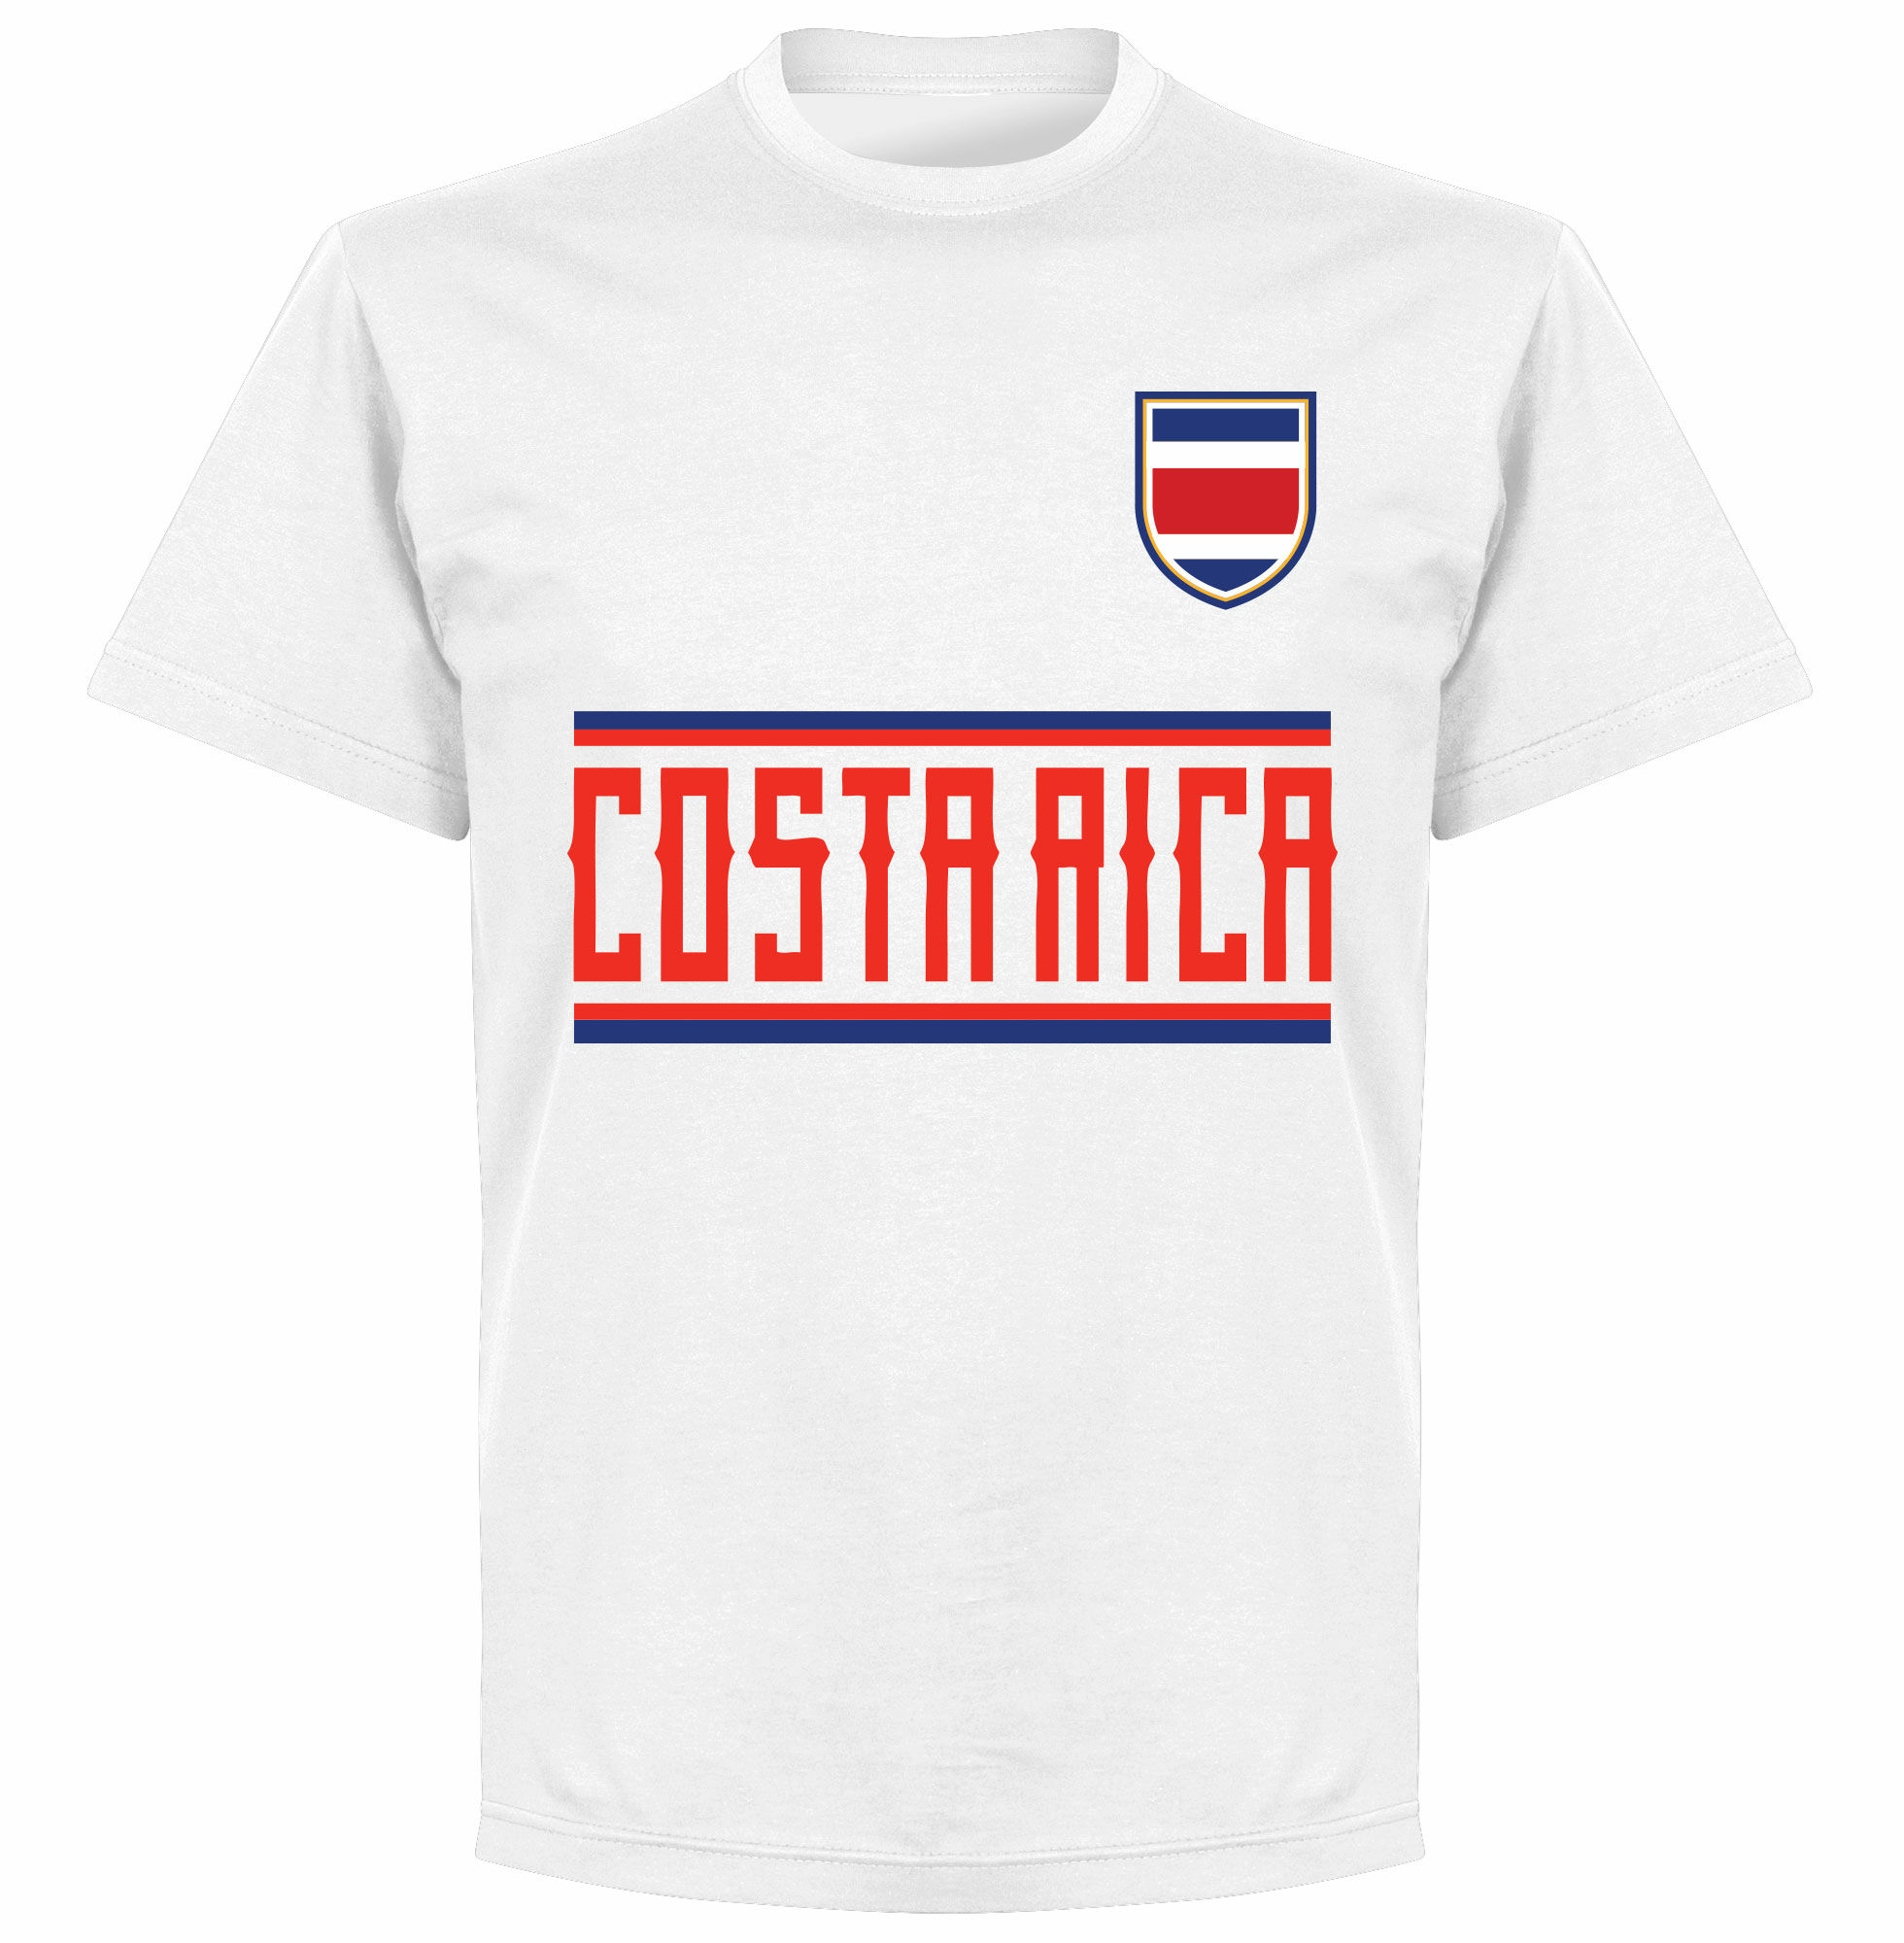 Kostarika - Tričko - bílé